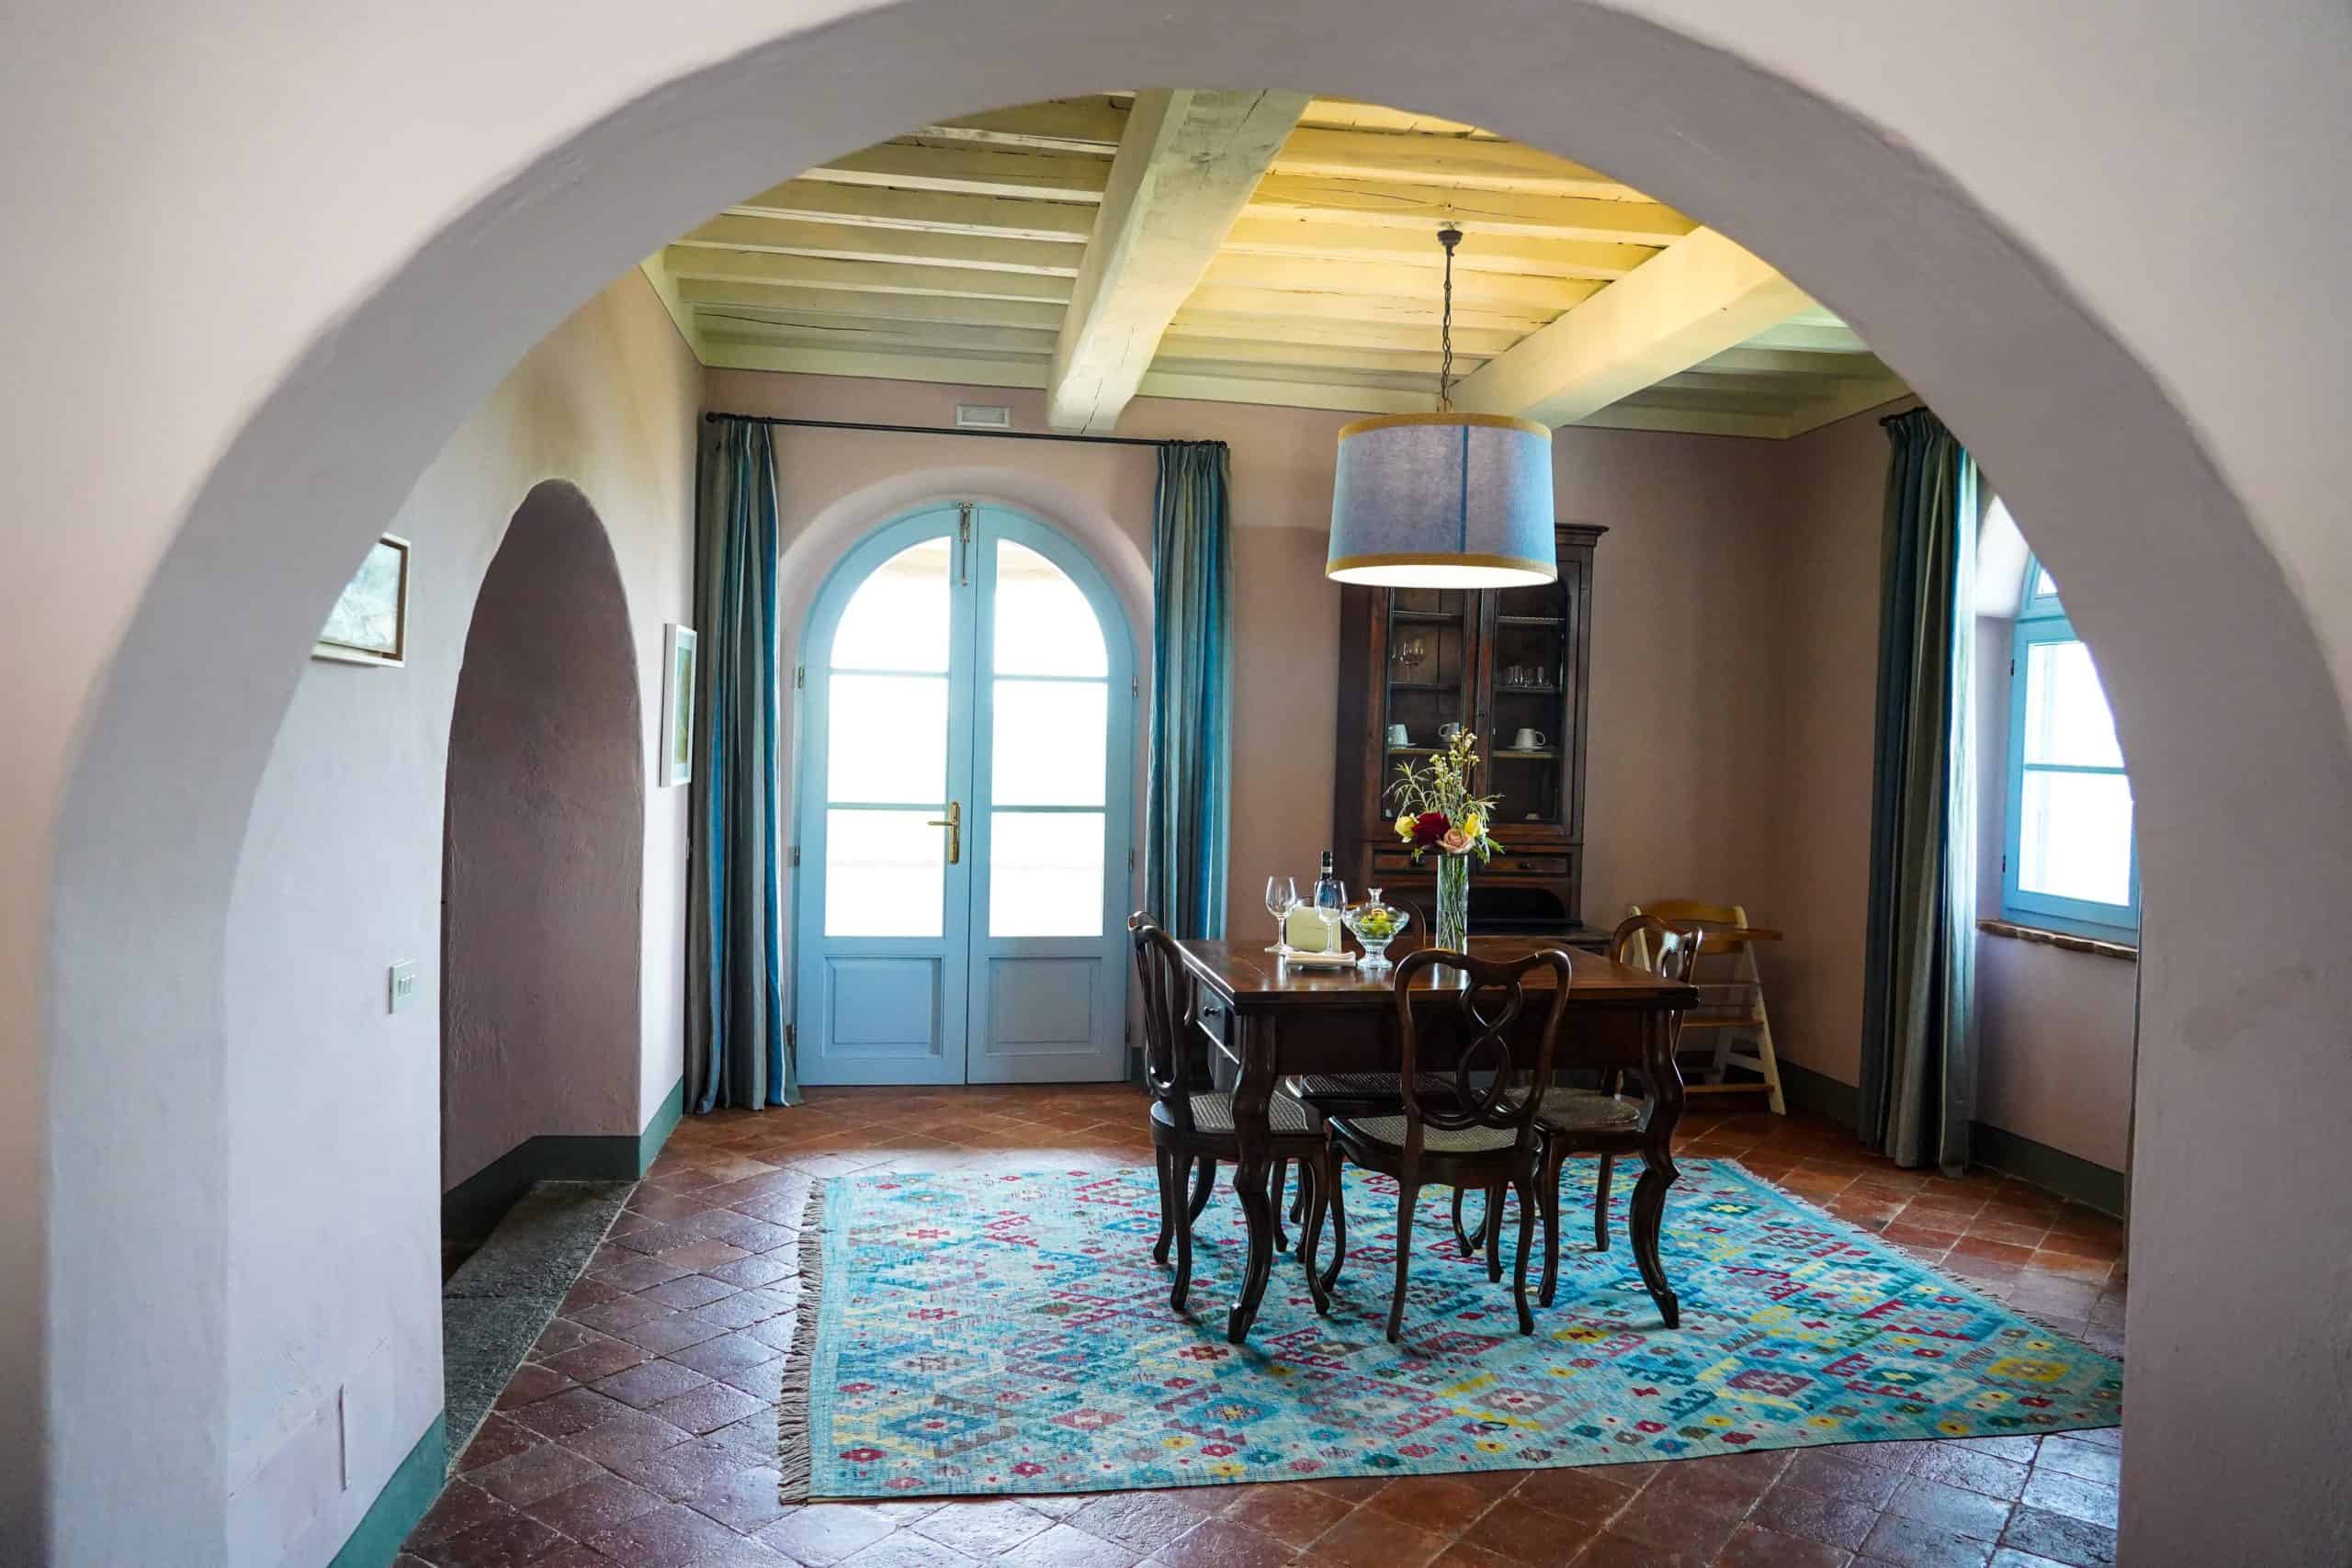 Borgo Suite Dining Room